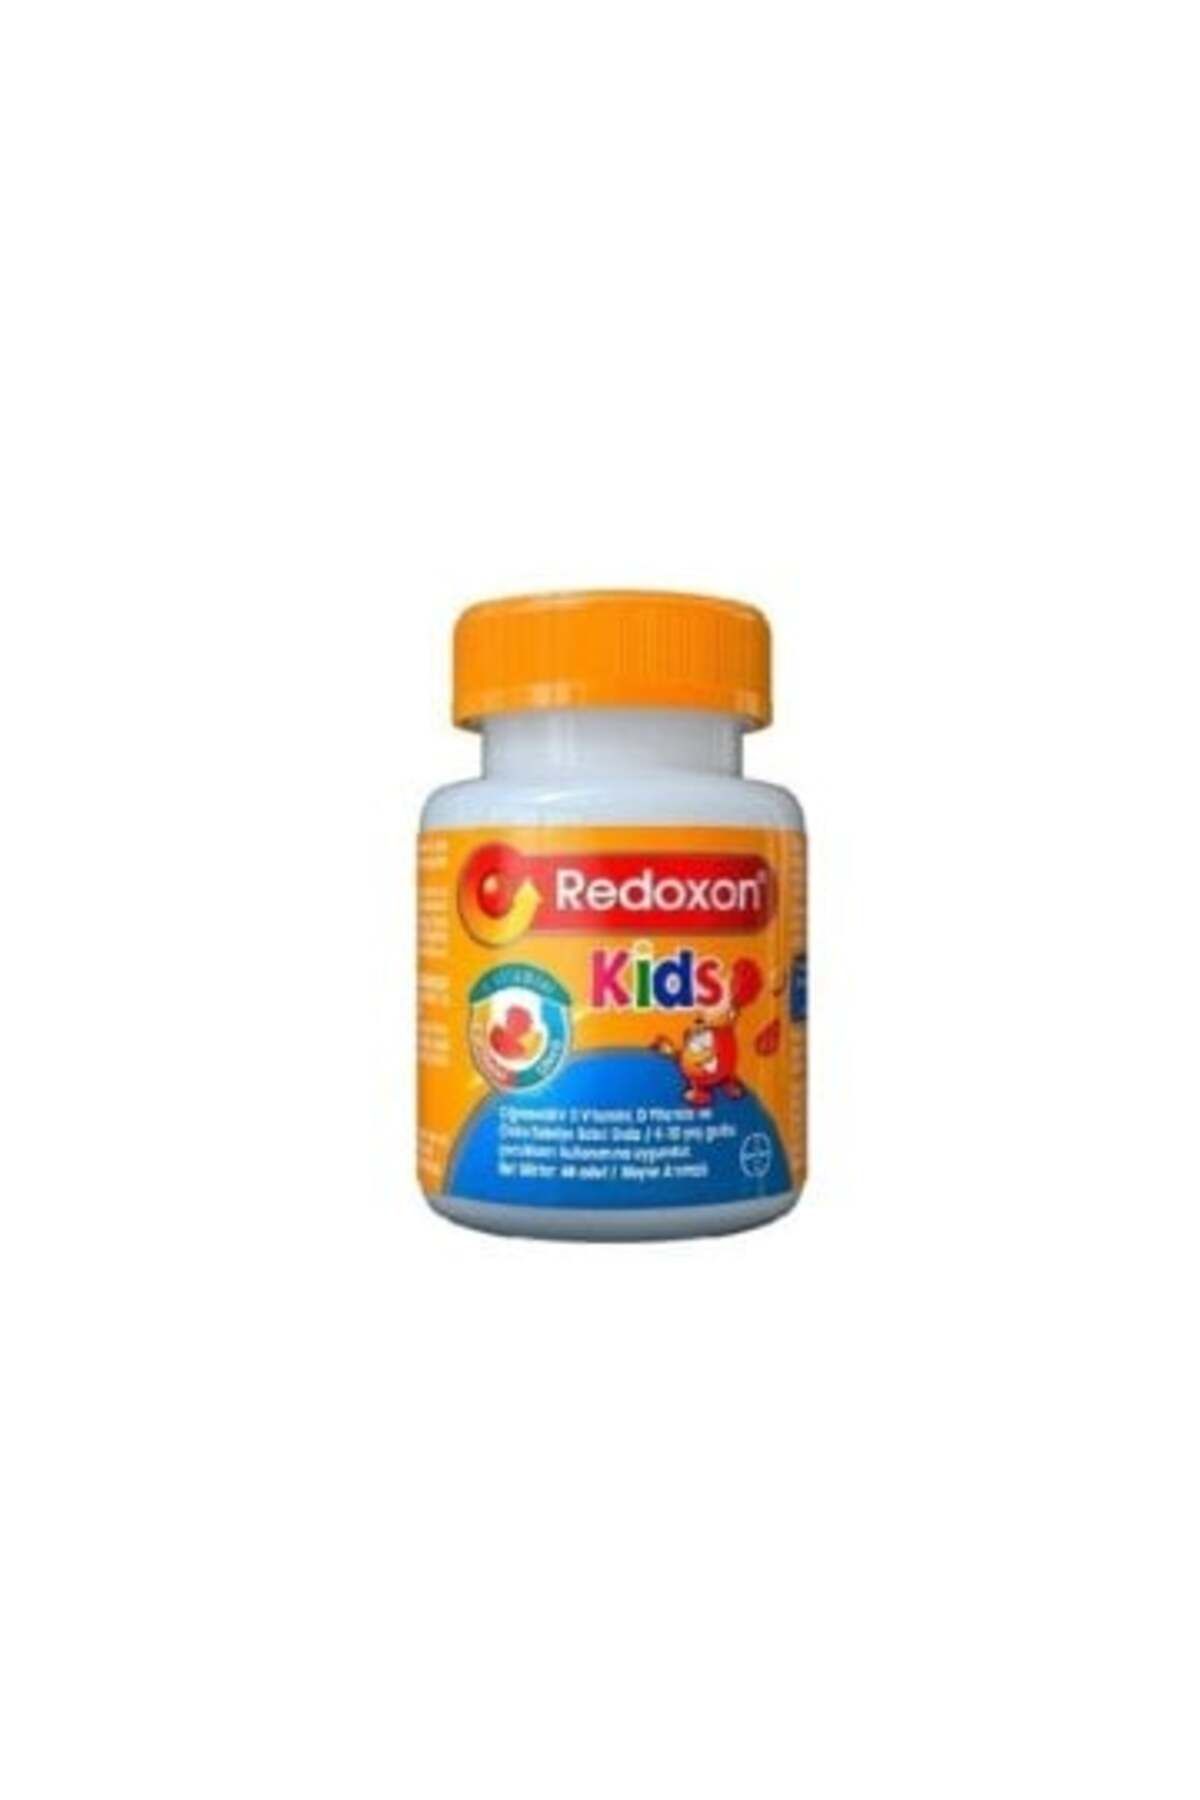 Redoxon Kids Meyve Aromalı Çiğnenebilir Takviye Edici Gıda 60 Tablet ( 1 ADET )